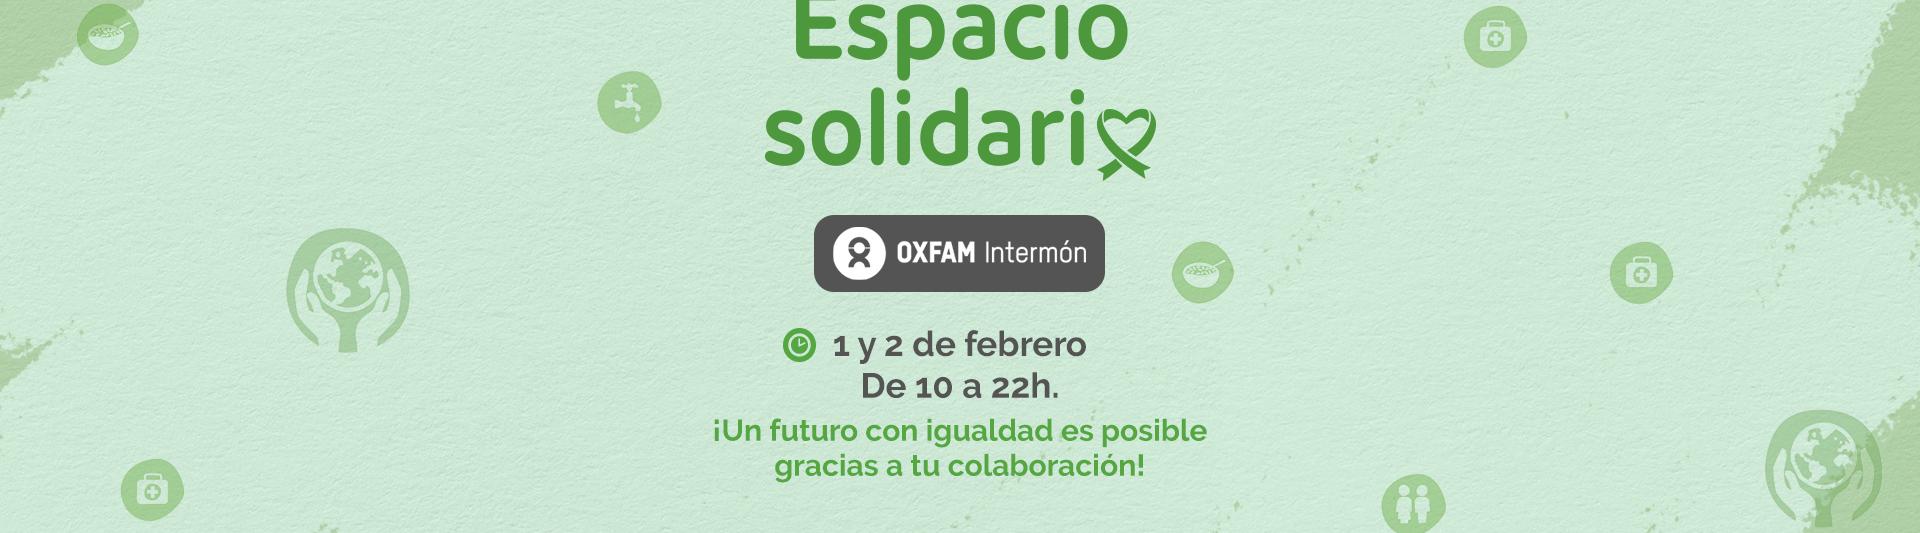 frontal_web-solidario-intermon-oxfam.jpg